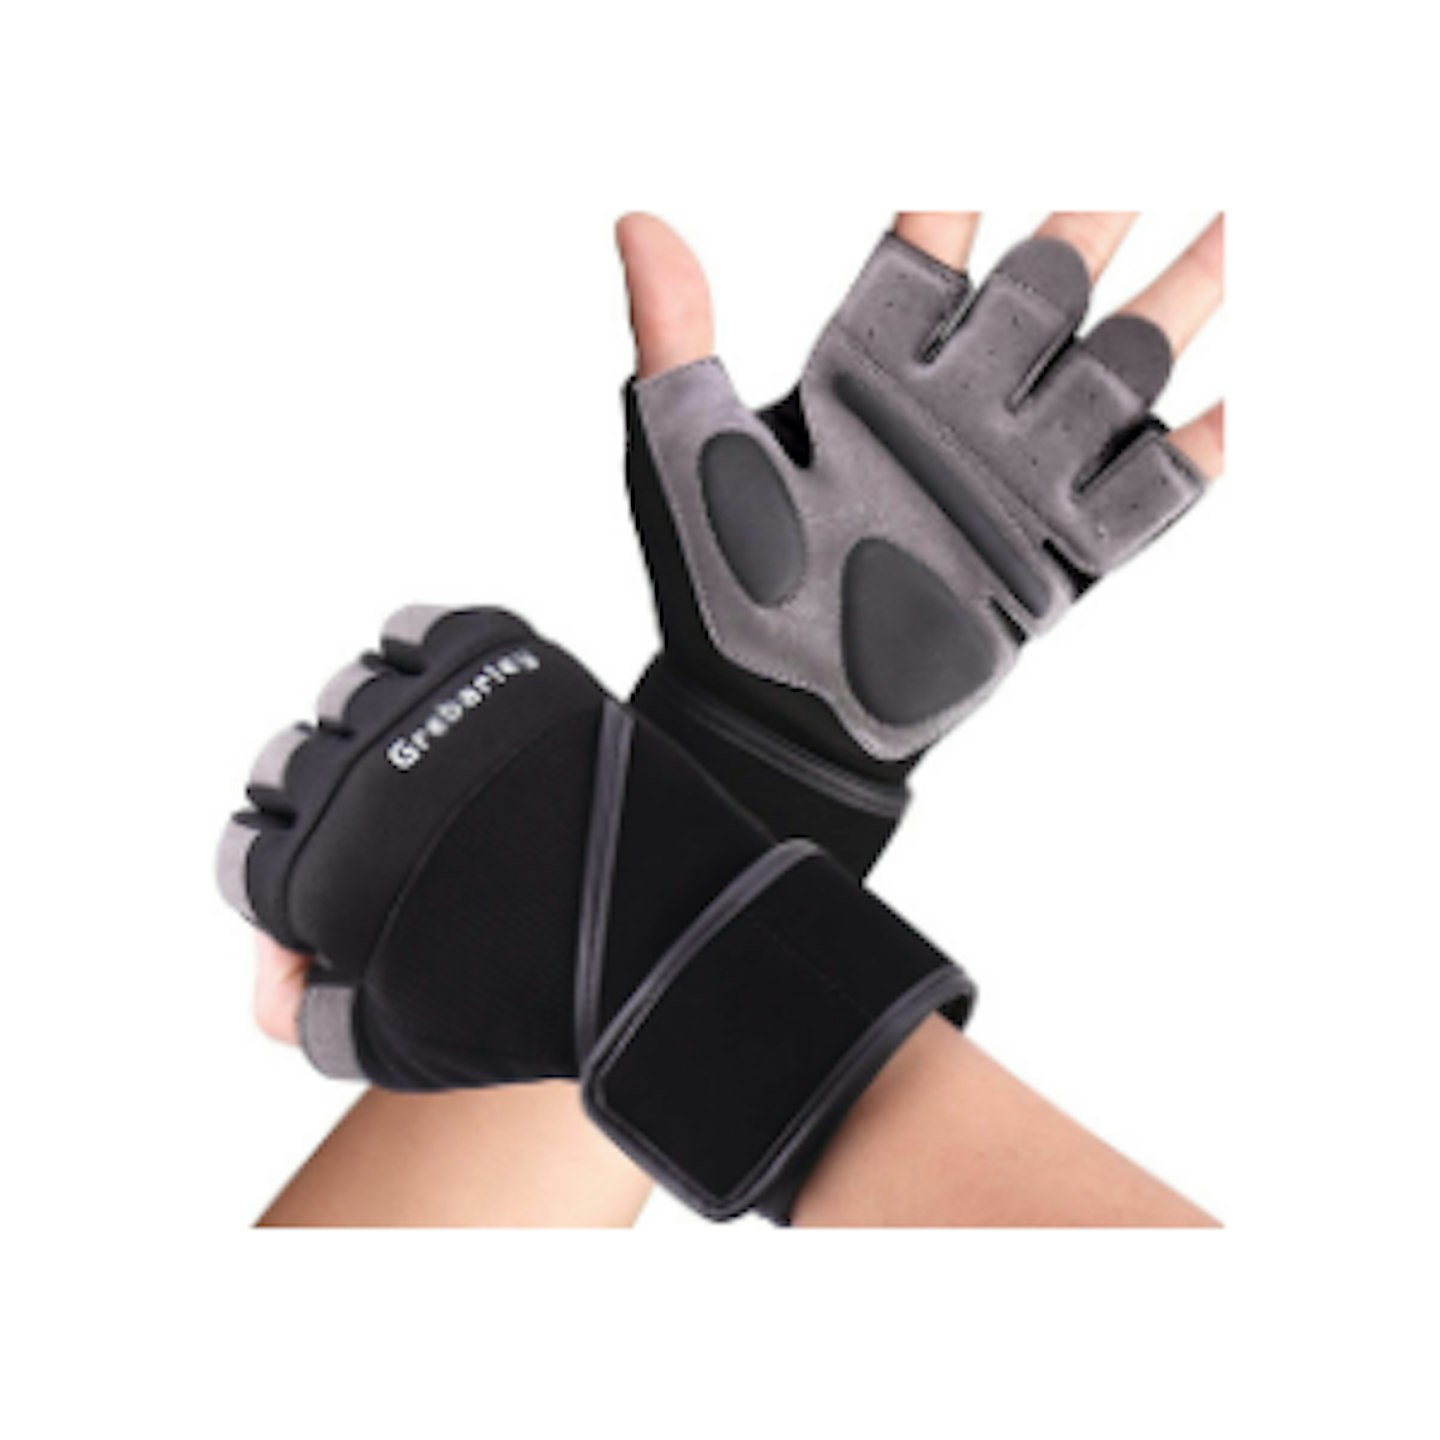  Grebarley Gym Gloves